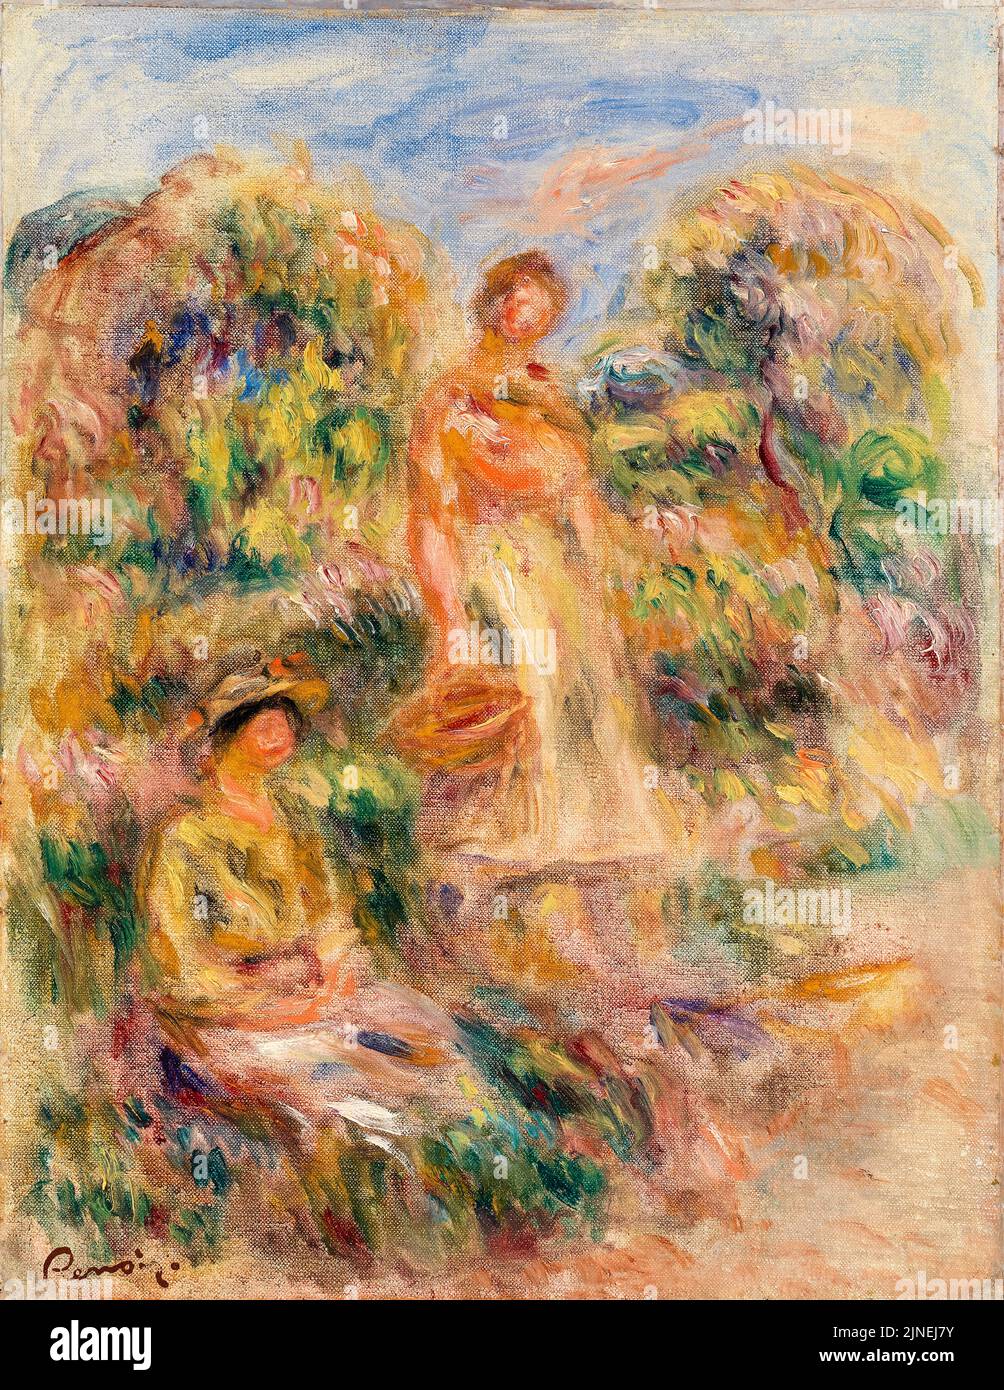 Pierre Auguste Renoir, femme debout et femme assise dans un paysage, peinture à l'huile sur toile, vers 1919 Banque D'Images